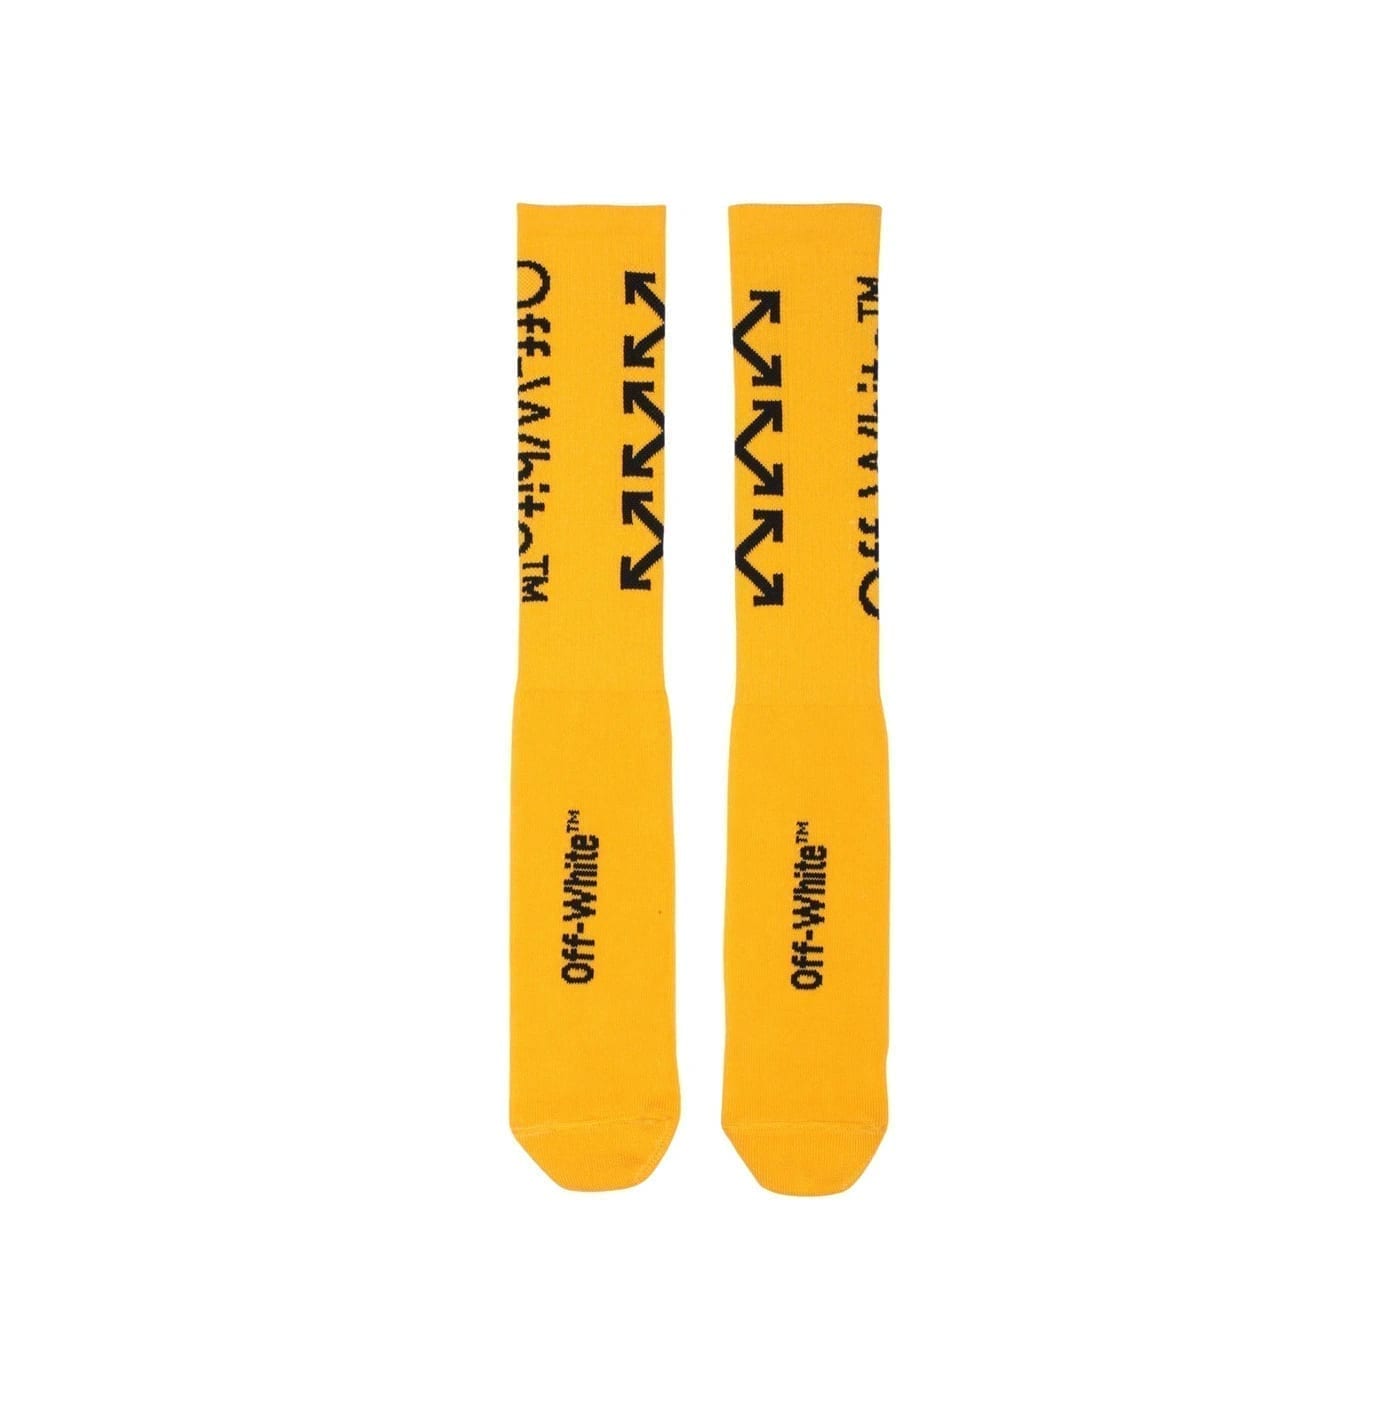 Off-White Arrow Socks Yellow/Black Off-White